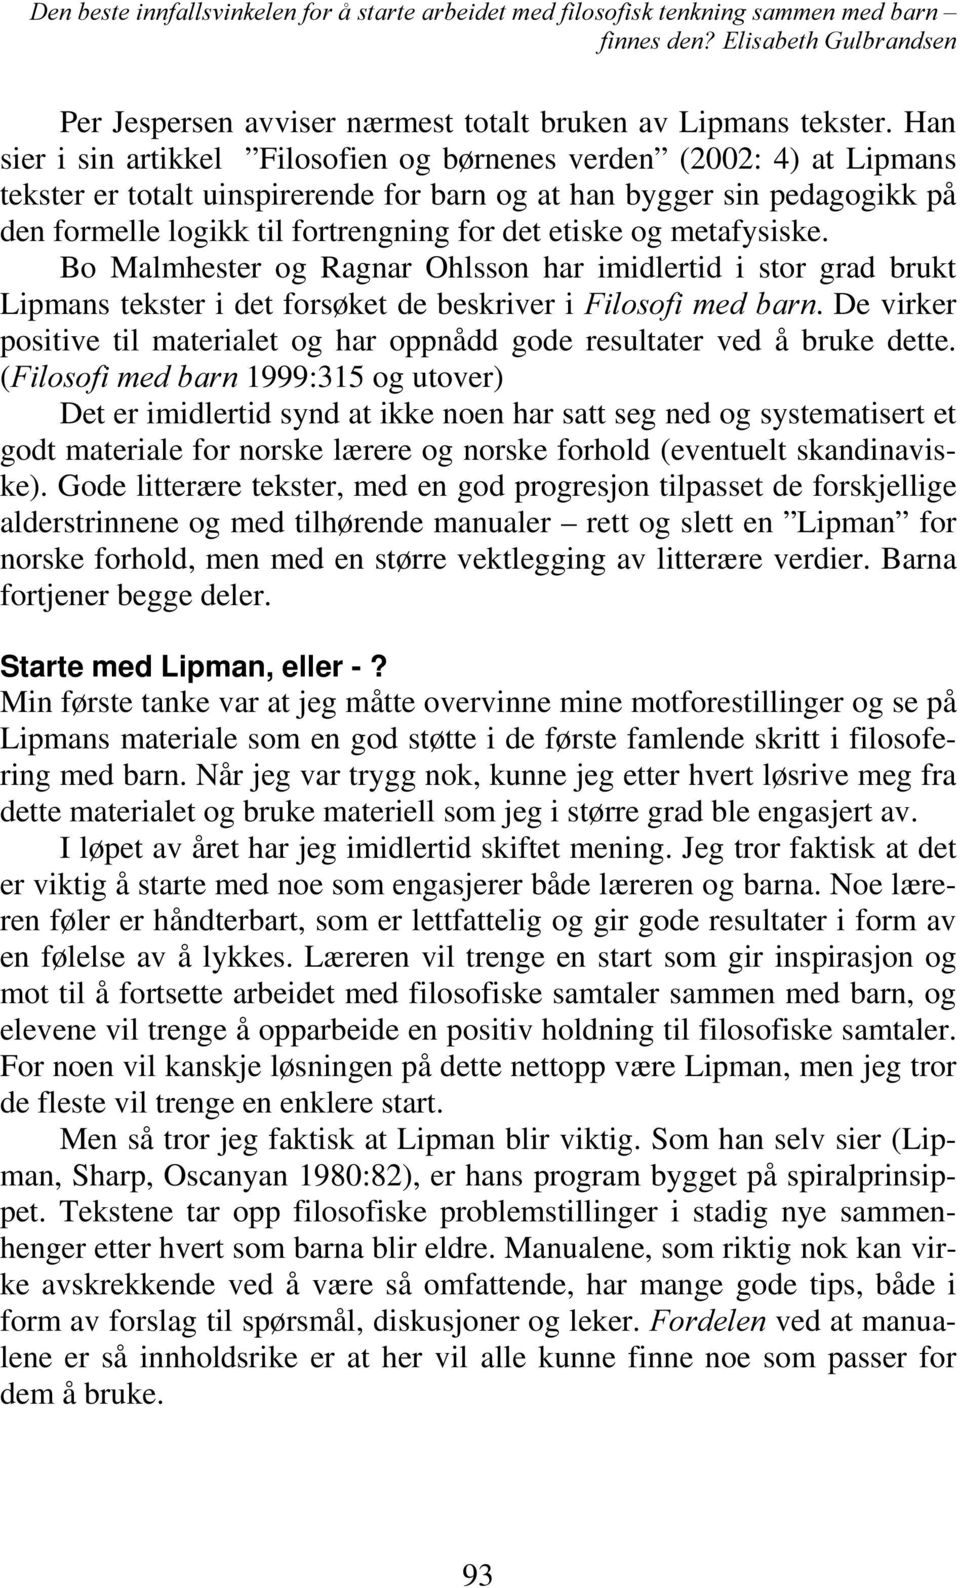 etiske og metafysiske. Bo Malmhester og Ragnar Ohlsson har imidlertid i stor grad brukt Lipmans tekster i det forsøket de beskriver i )LORVRILPHGEDUQ.